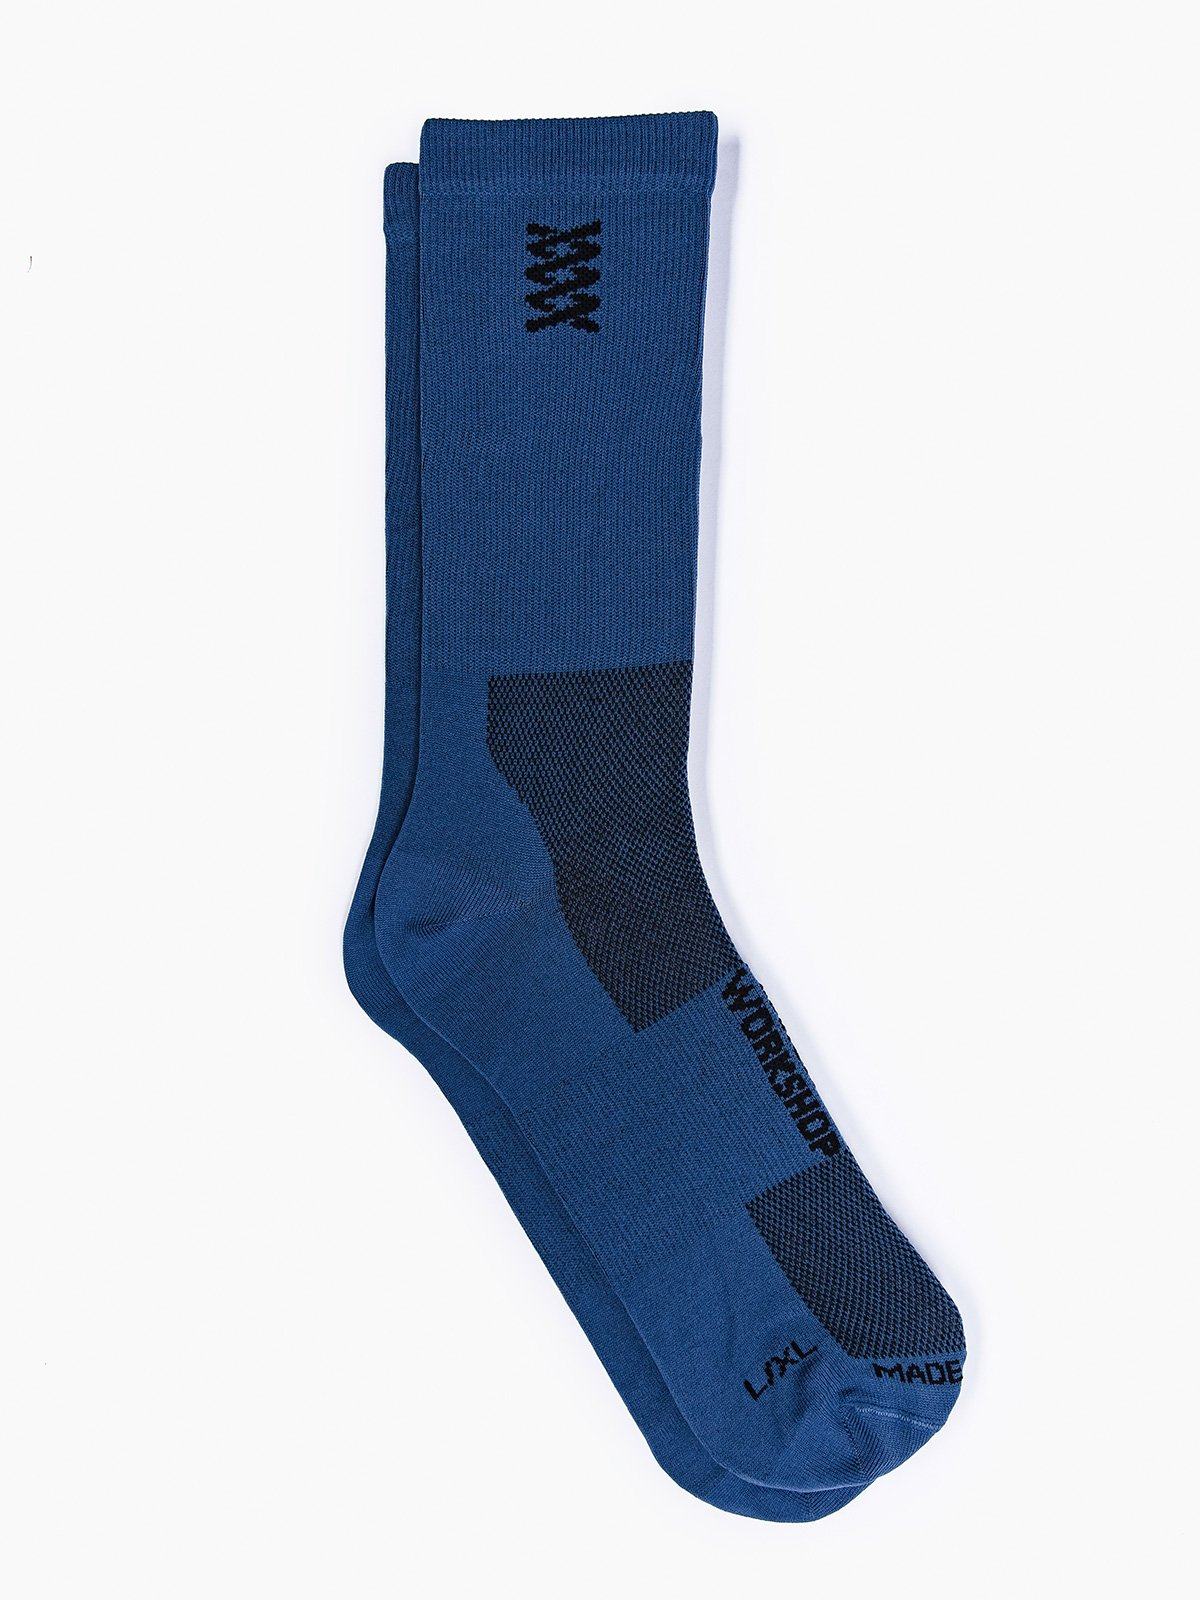 Mission Pro Socks von Mission Workshop - Wetterfeste Taschen und technische Bekleidung - San Francisco & Los Angeles - Für die Ewigkeit gebaut - Garantiert